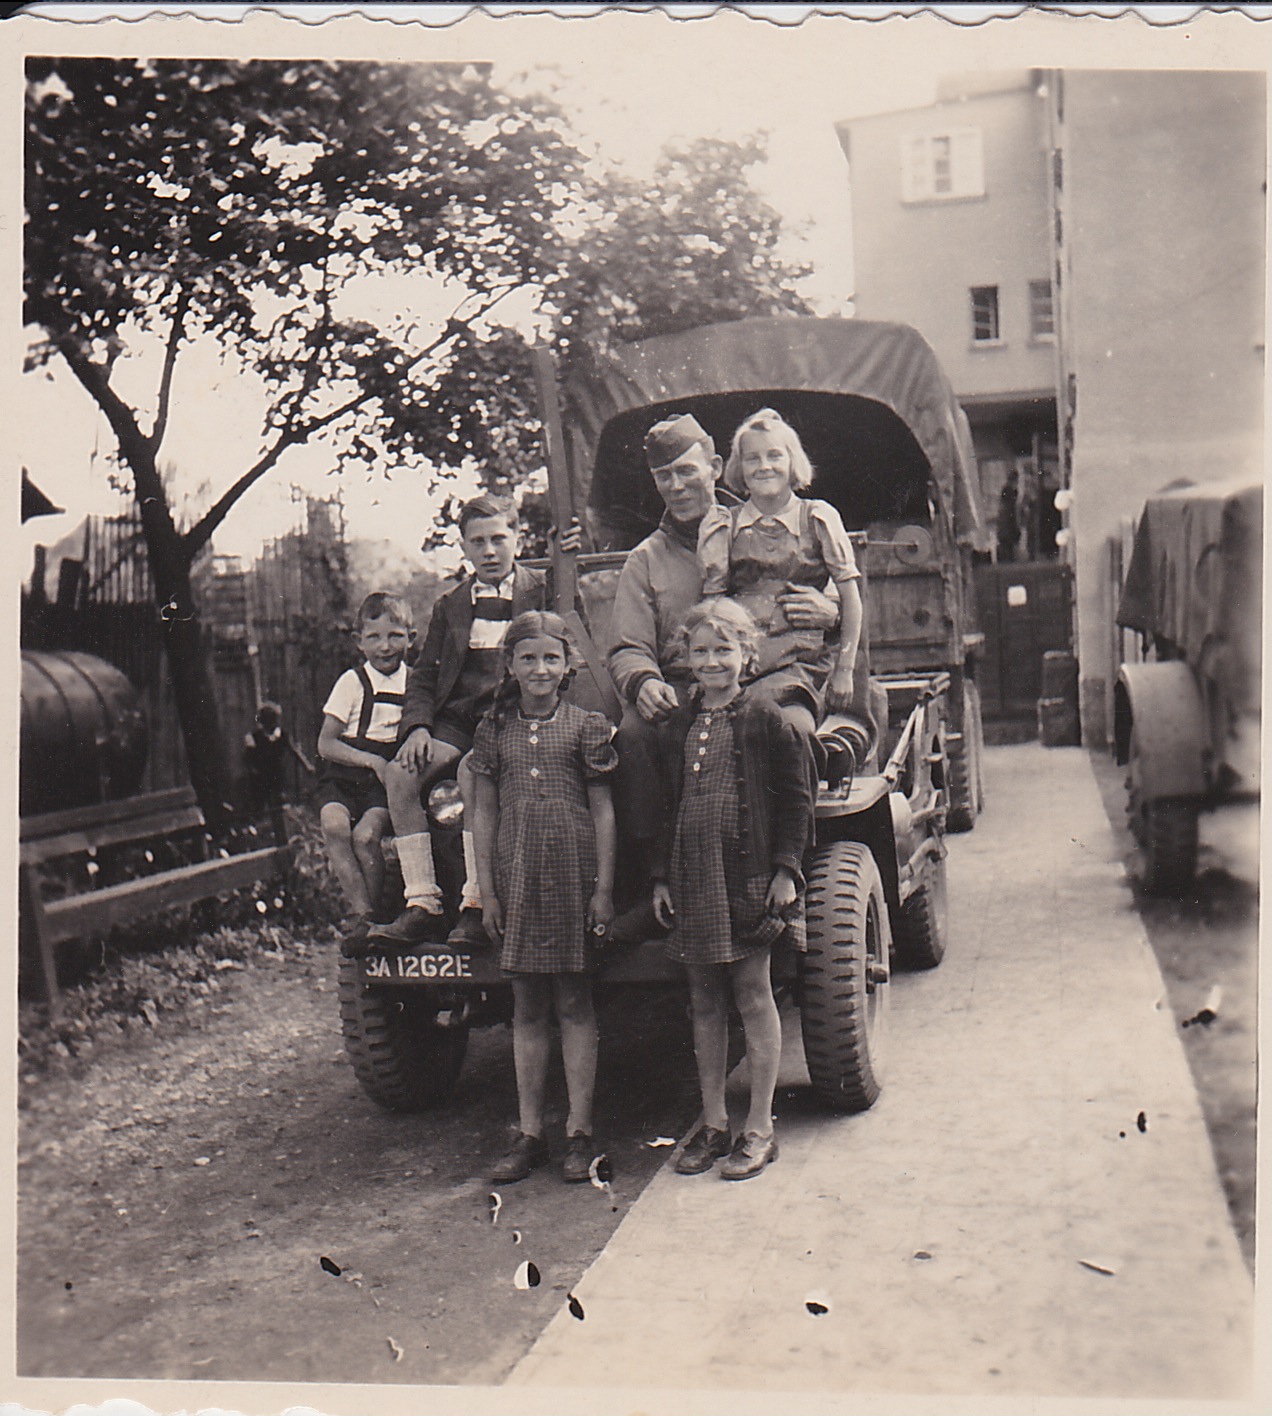 Capt McClellan and kids in Winnweiler Germany 5-9-45